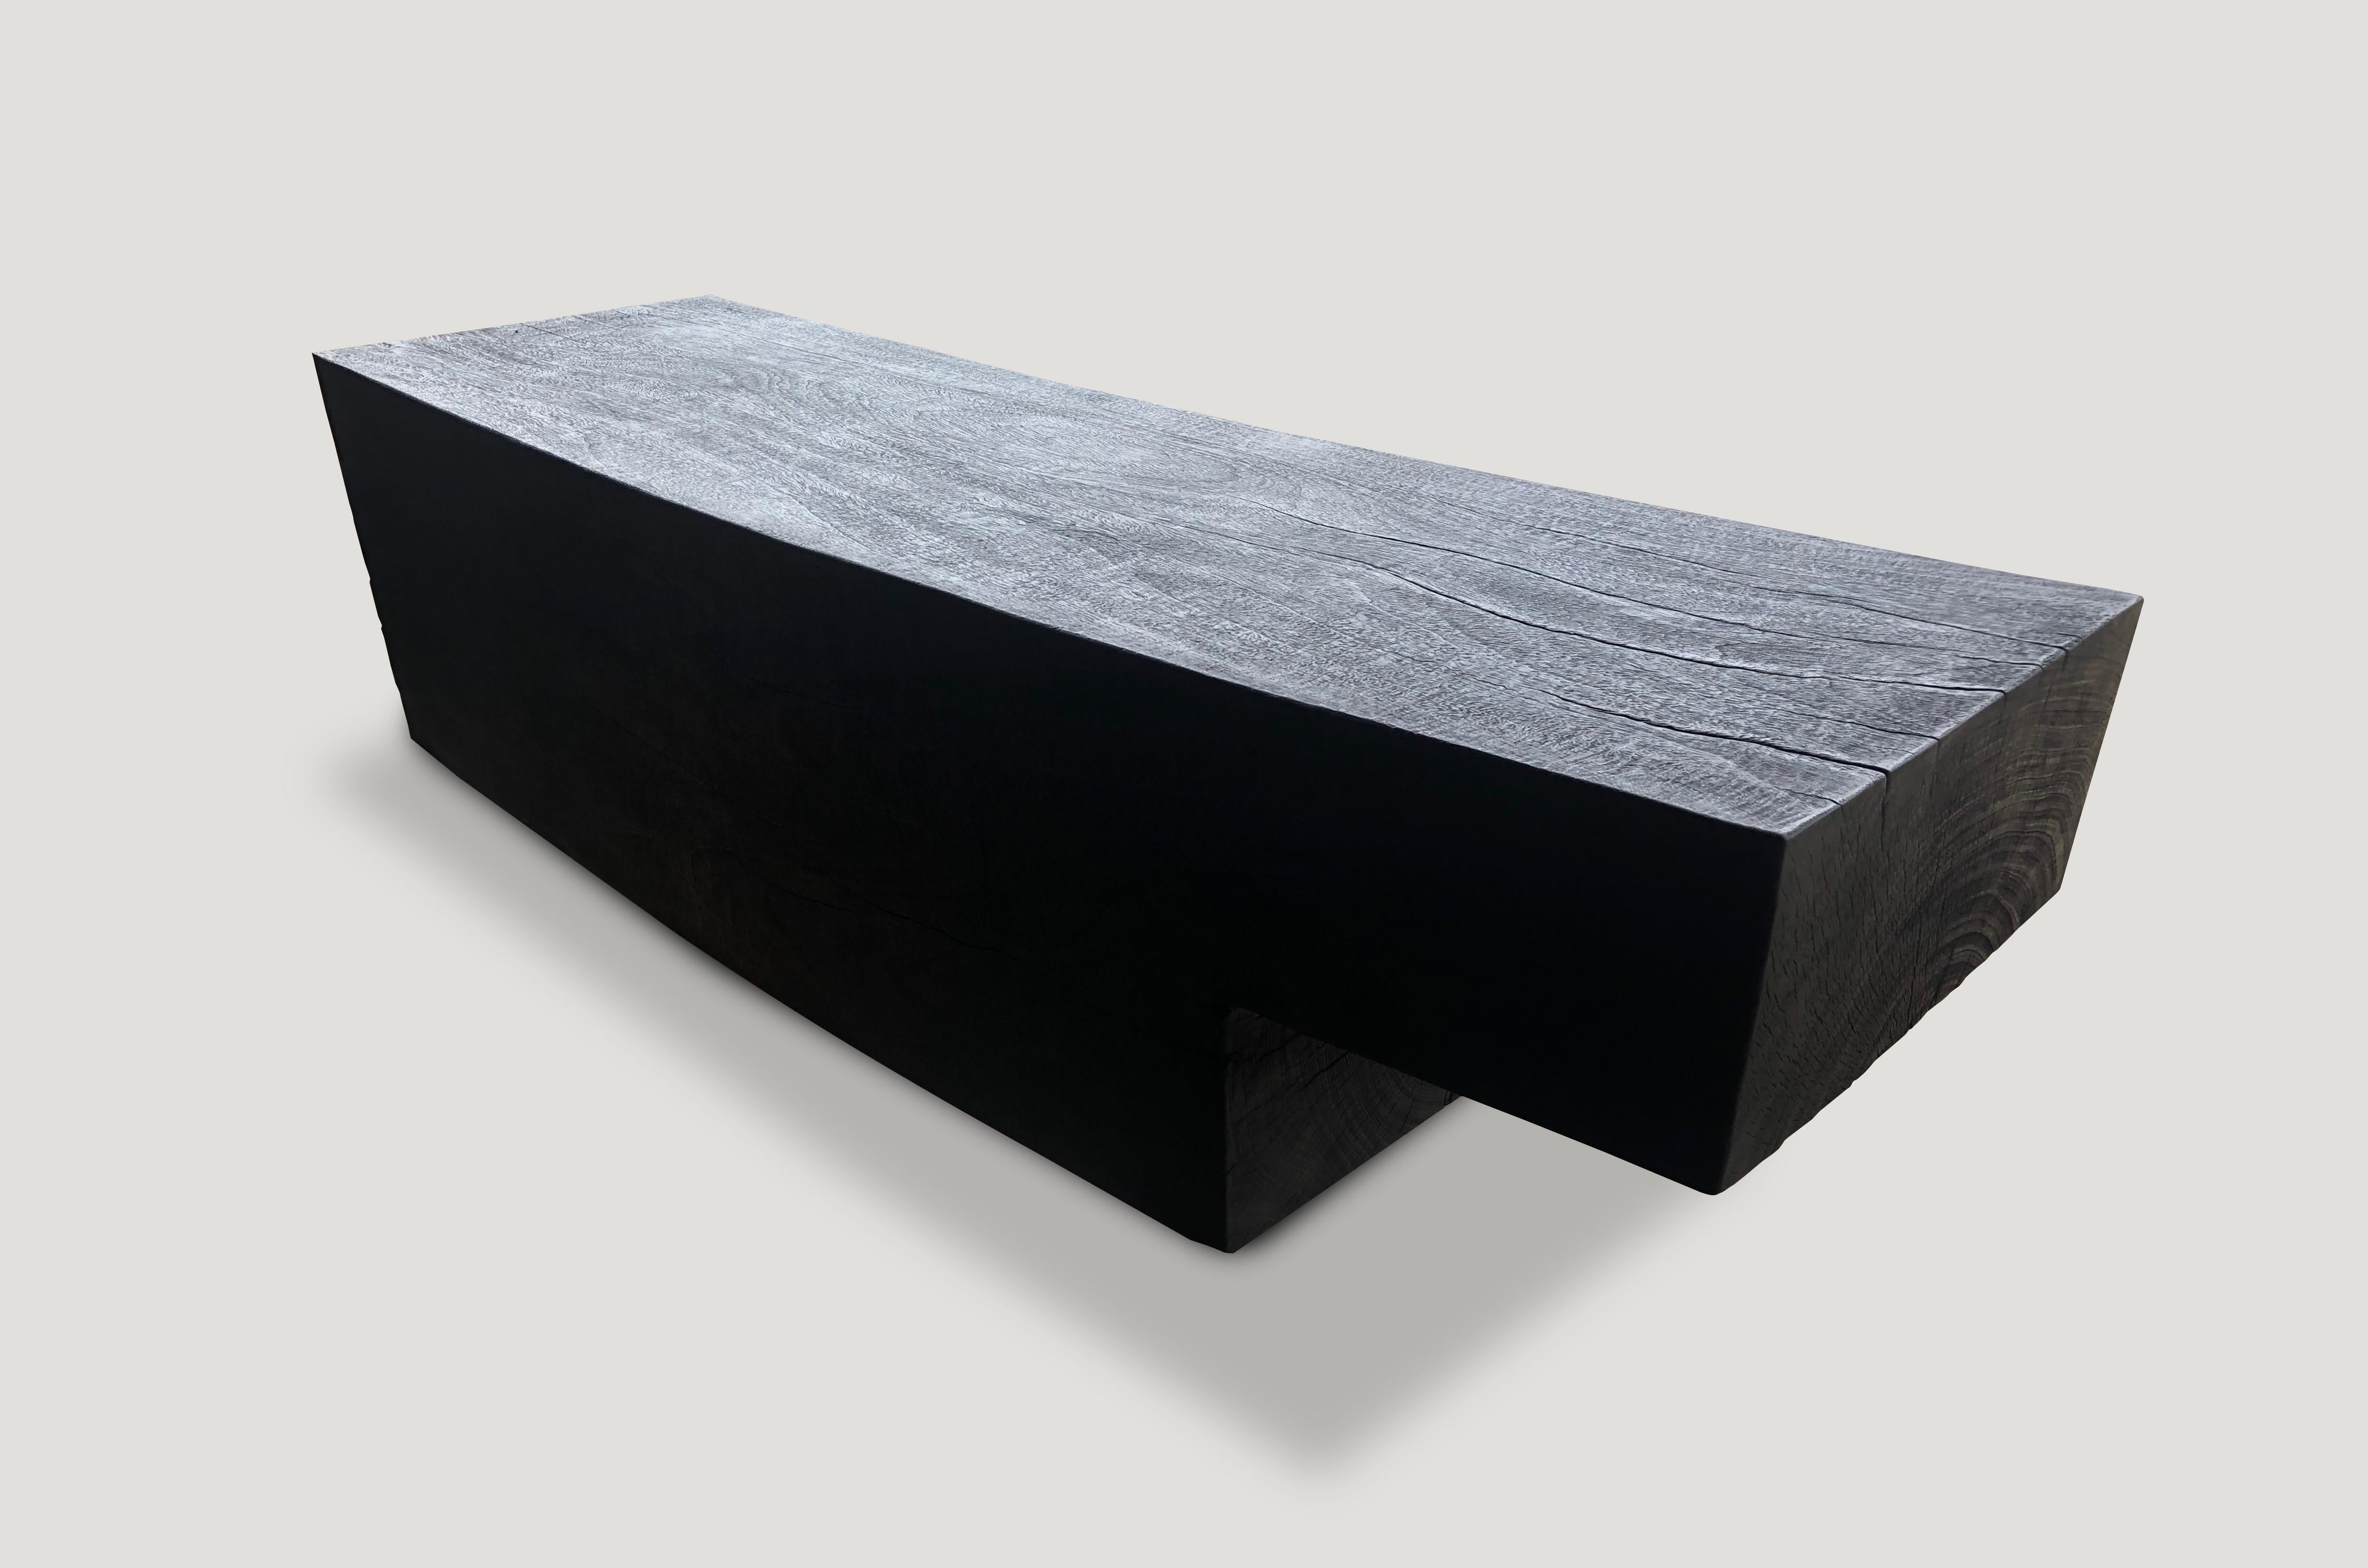 Impressionnant banc minimaliste en bois de suar carbonisé avec une finition lisse et satinée. Chargé, poncé et scellé, il révèle les magnifiques veines du bois. Finitions et dimensions personnalisées disponibles. Veuillez vous renseigner.  

La